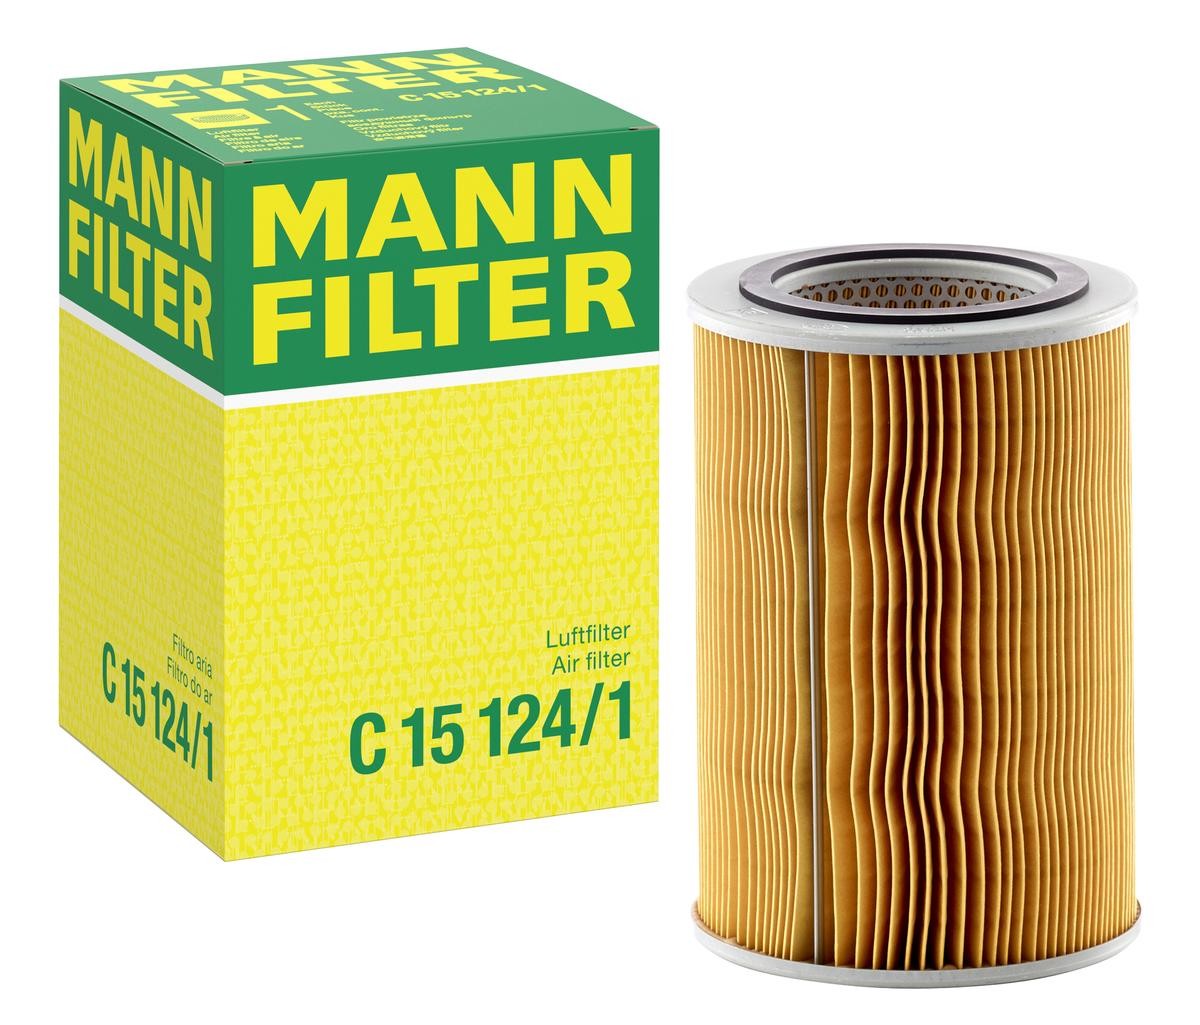 MANN-FILTER Air filter C 15 124/1